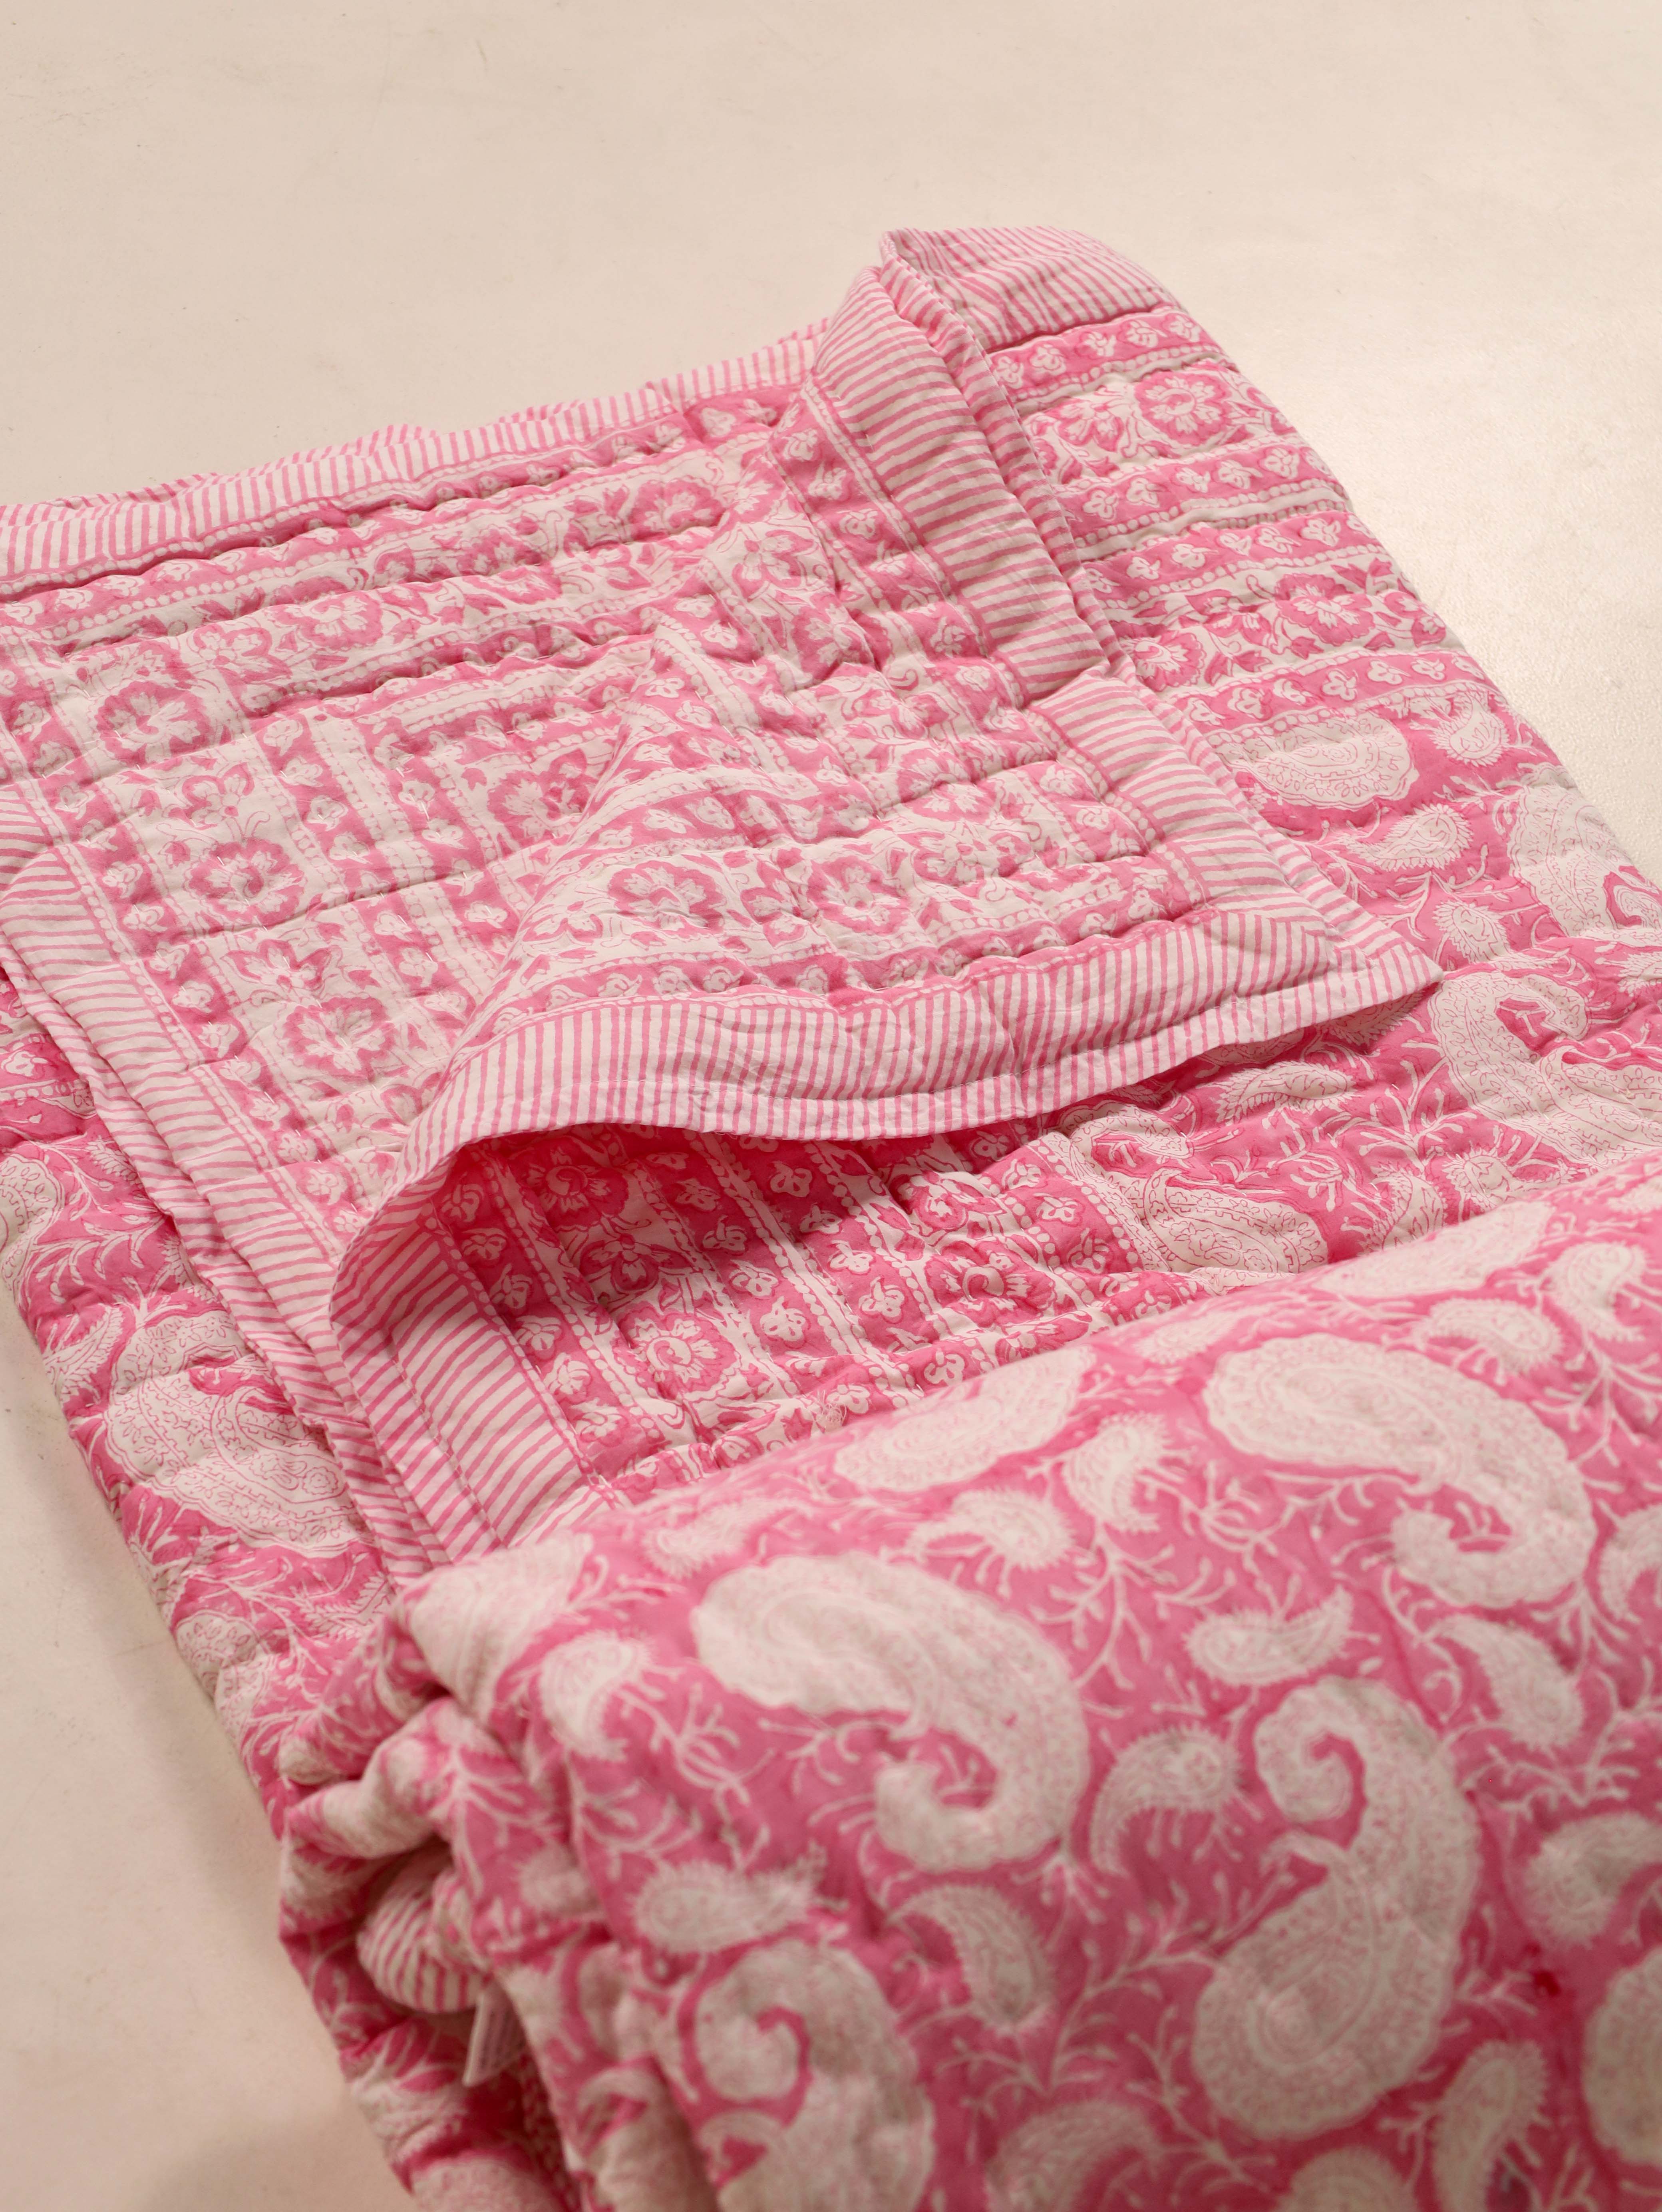 Jaipuri Razai With Pillow Covers - Pink Paisley